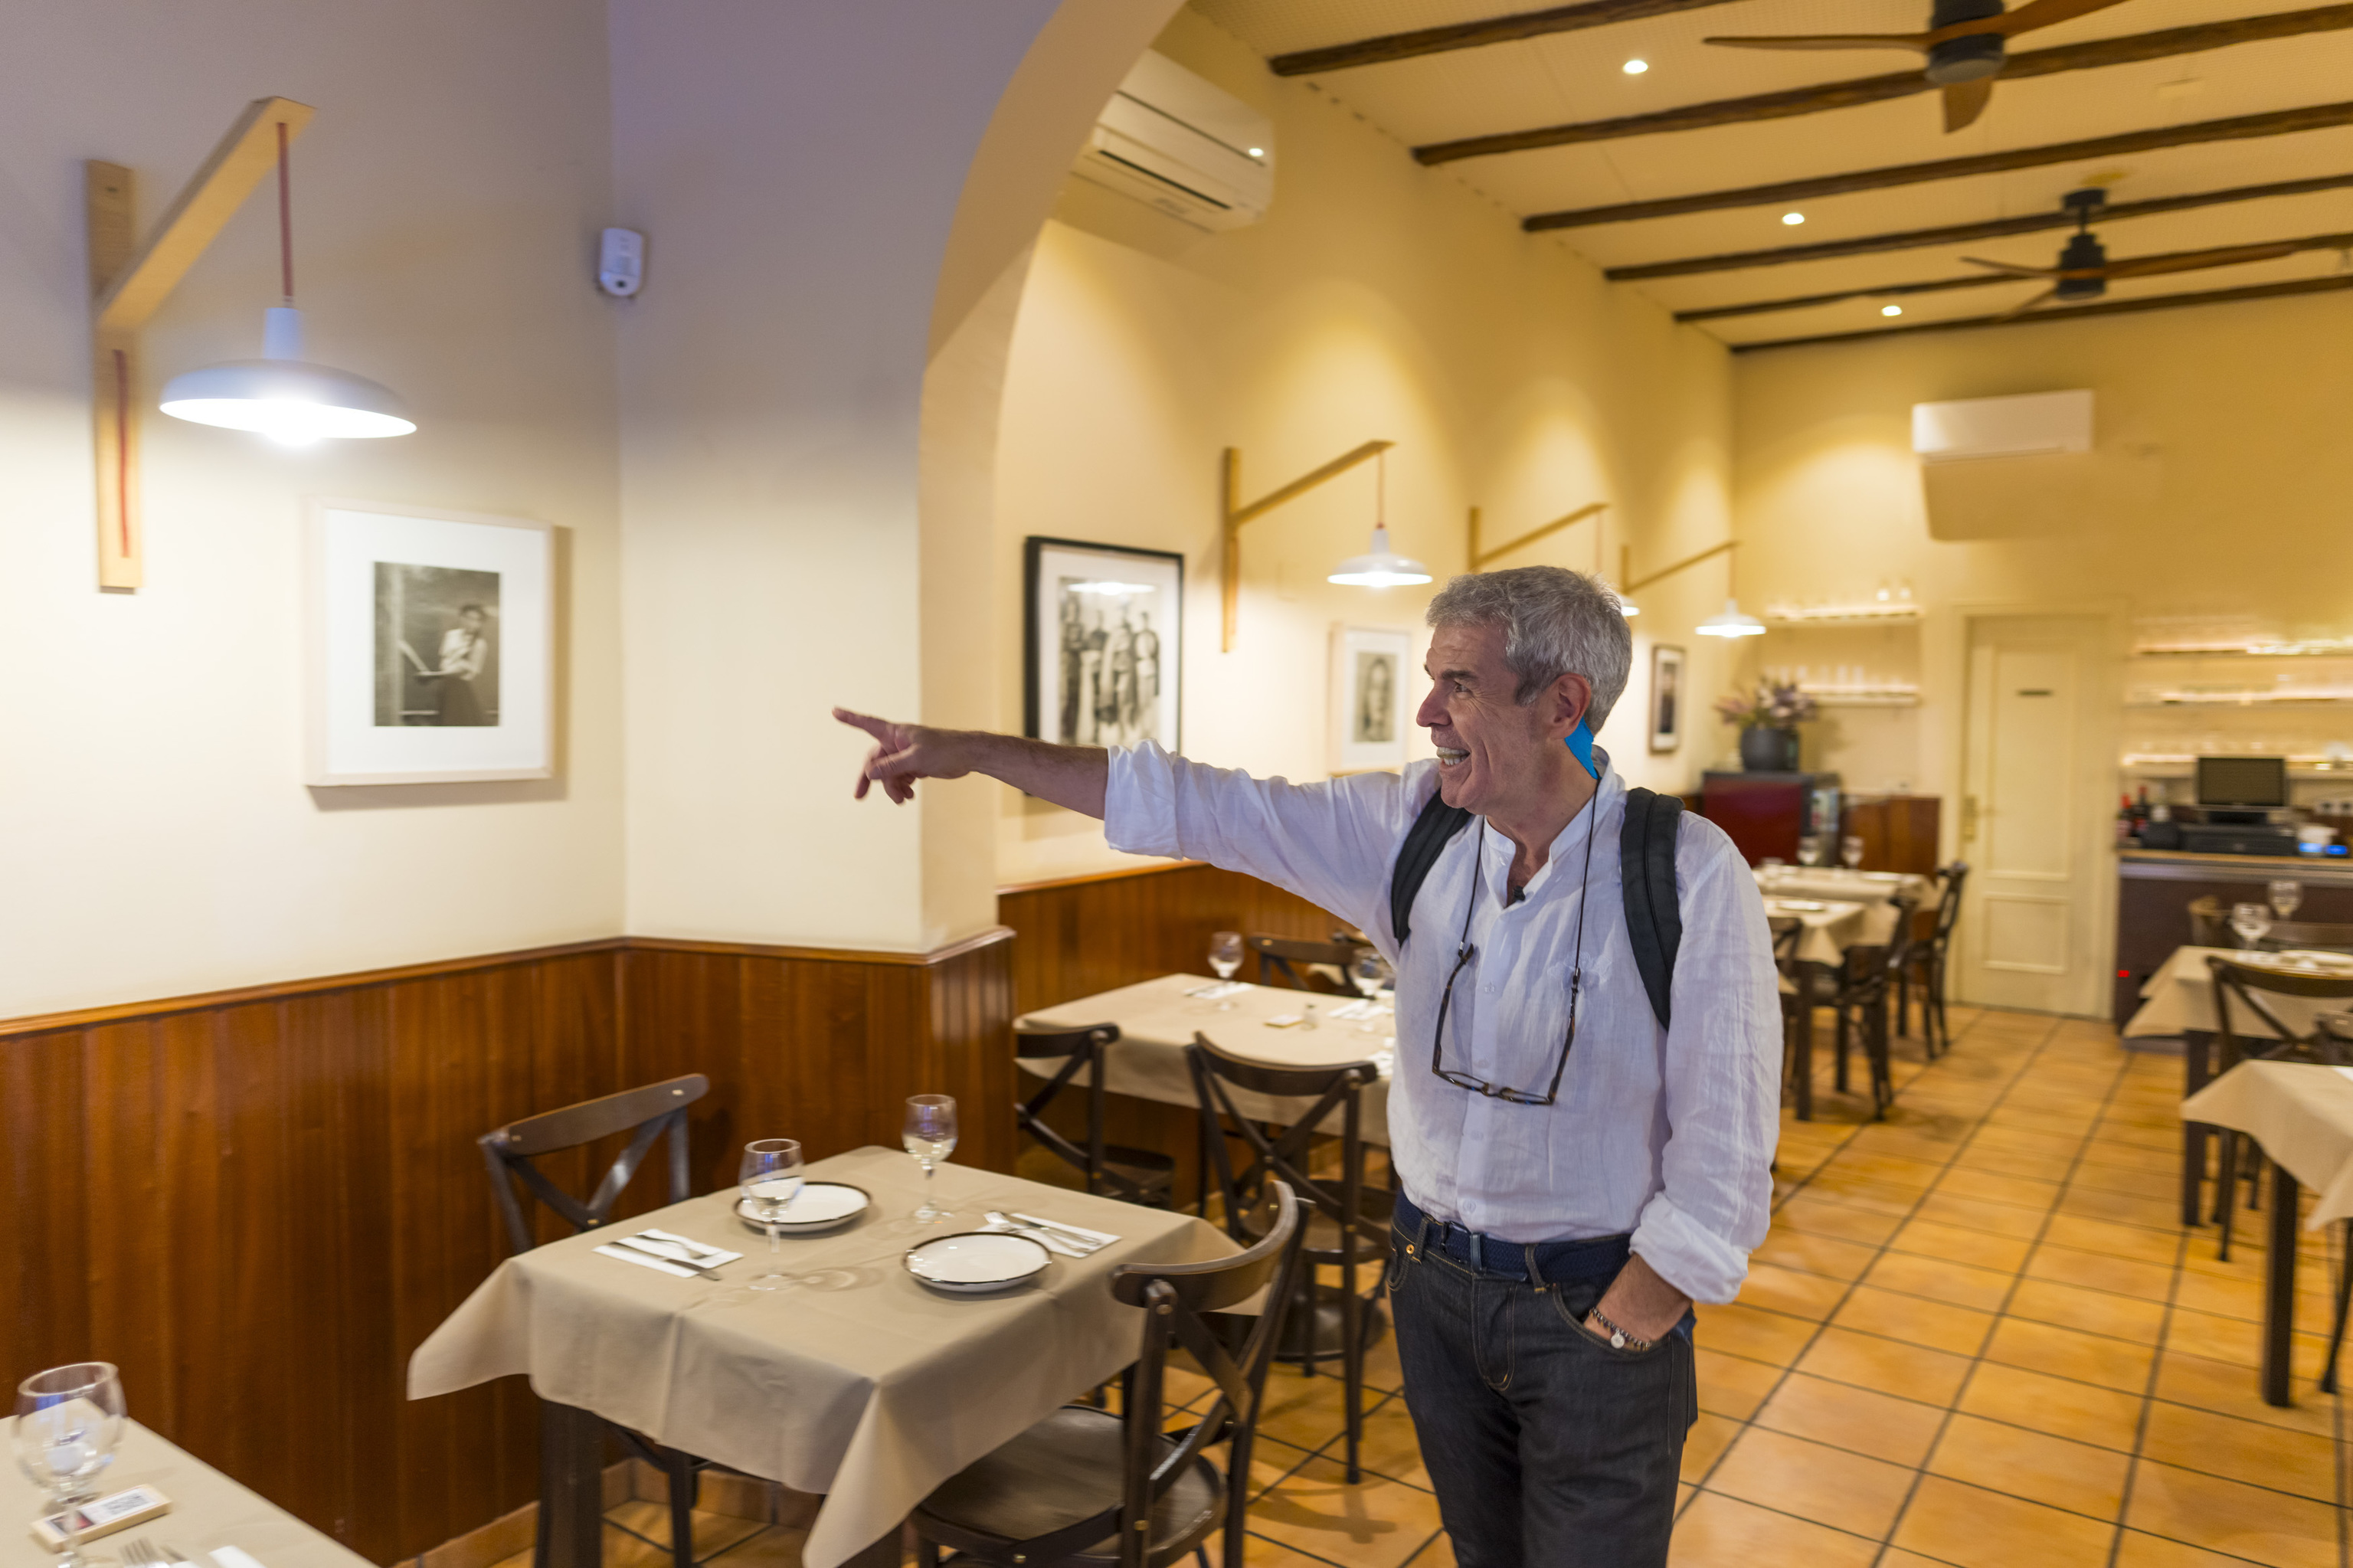 Caprile, señalando una de las fotografías, probablemente de García-Alix, que decora el Restaurante Bogotá.